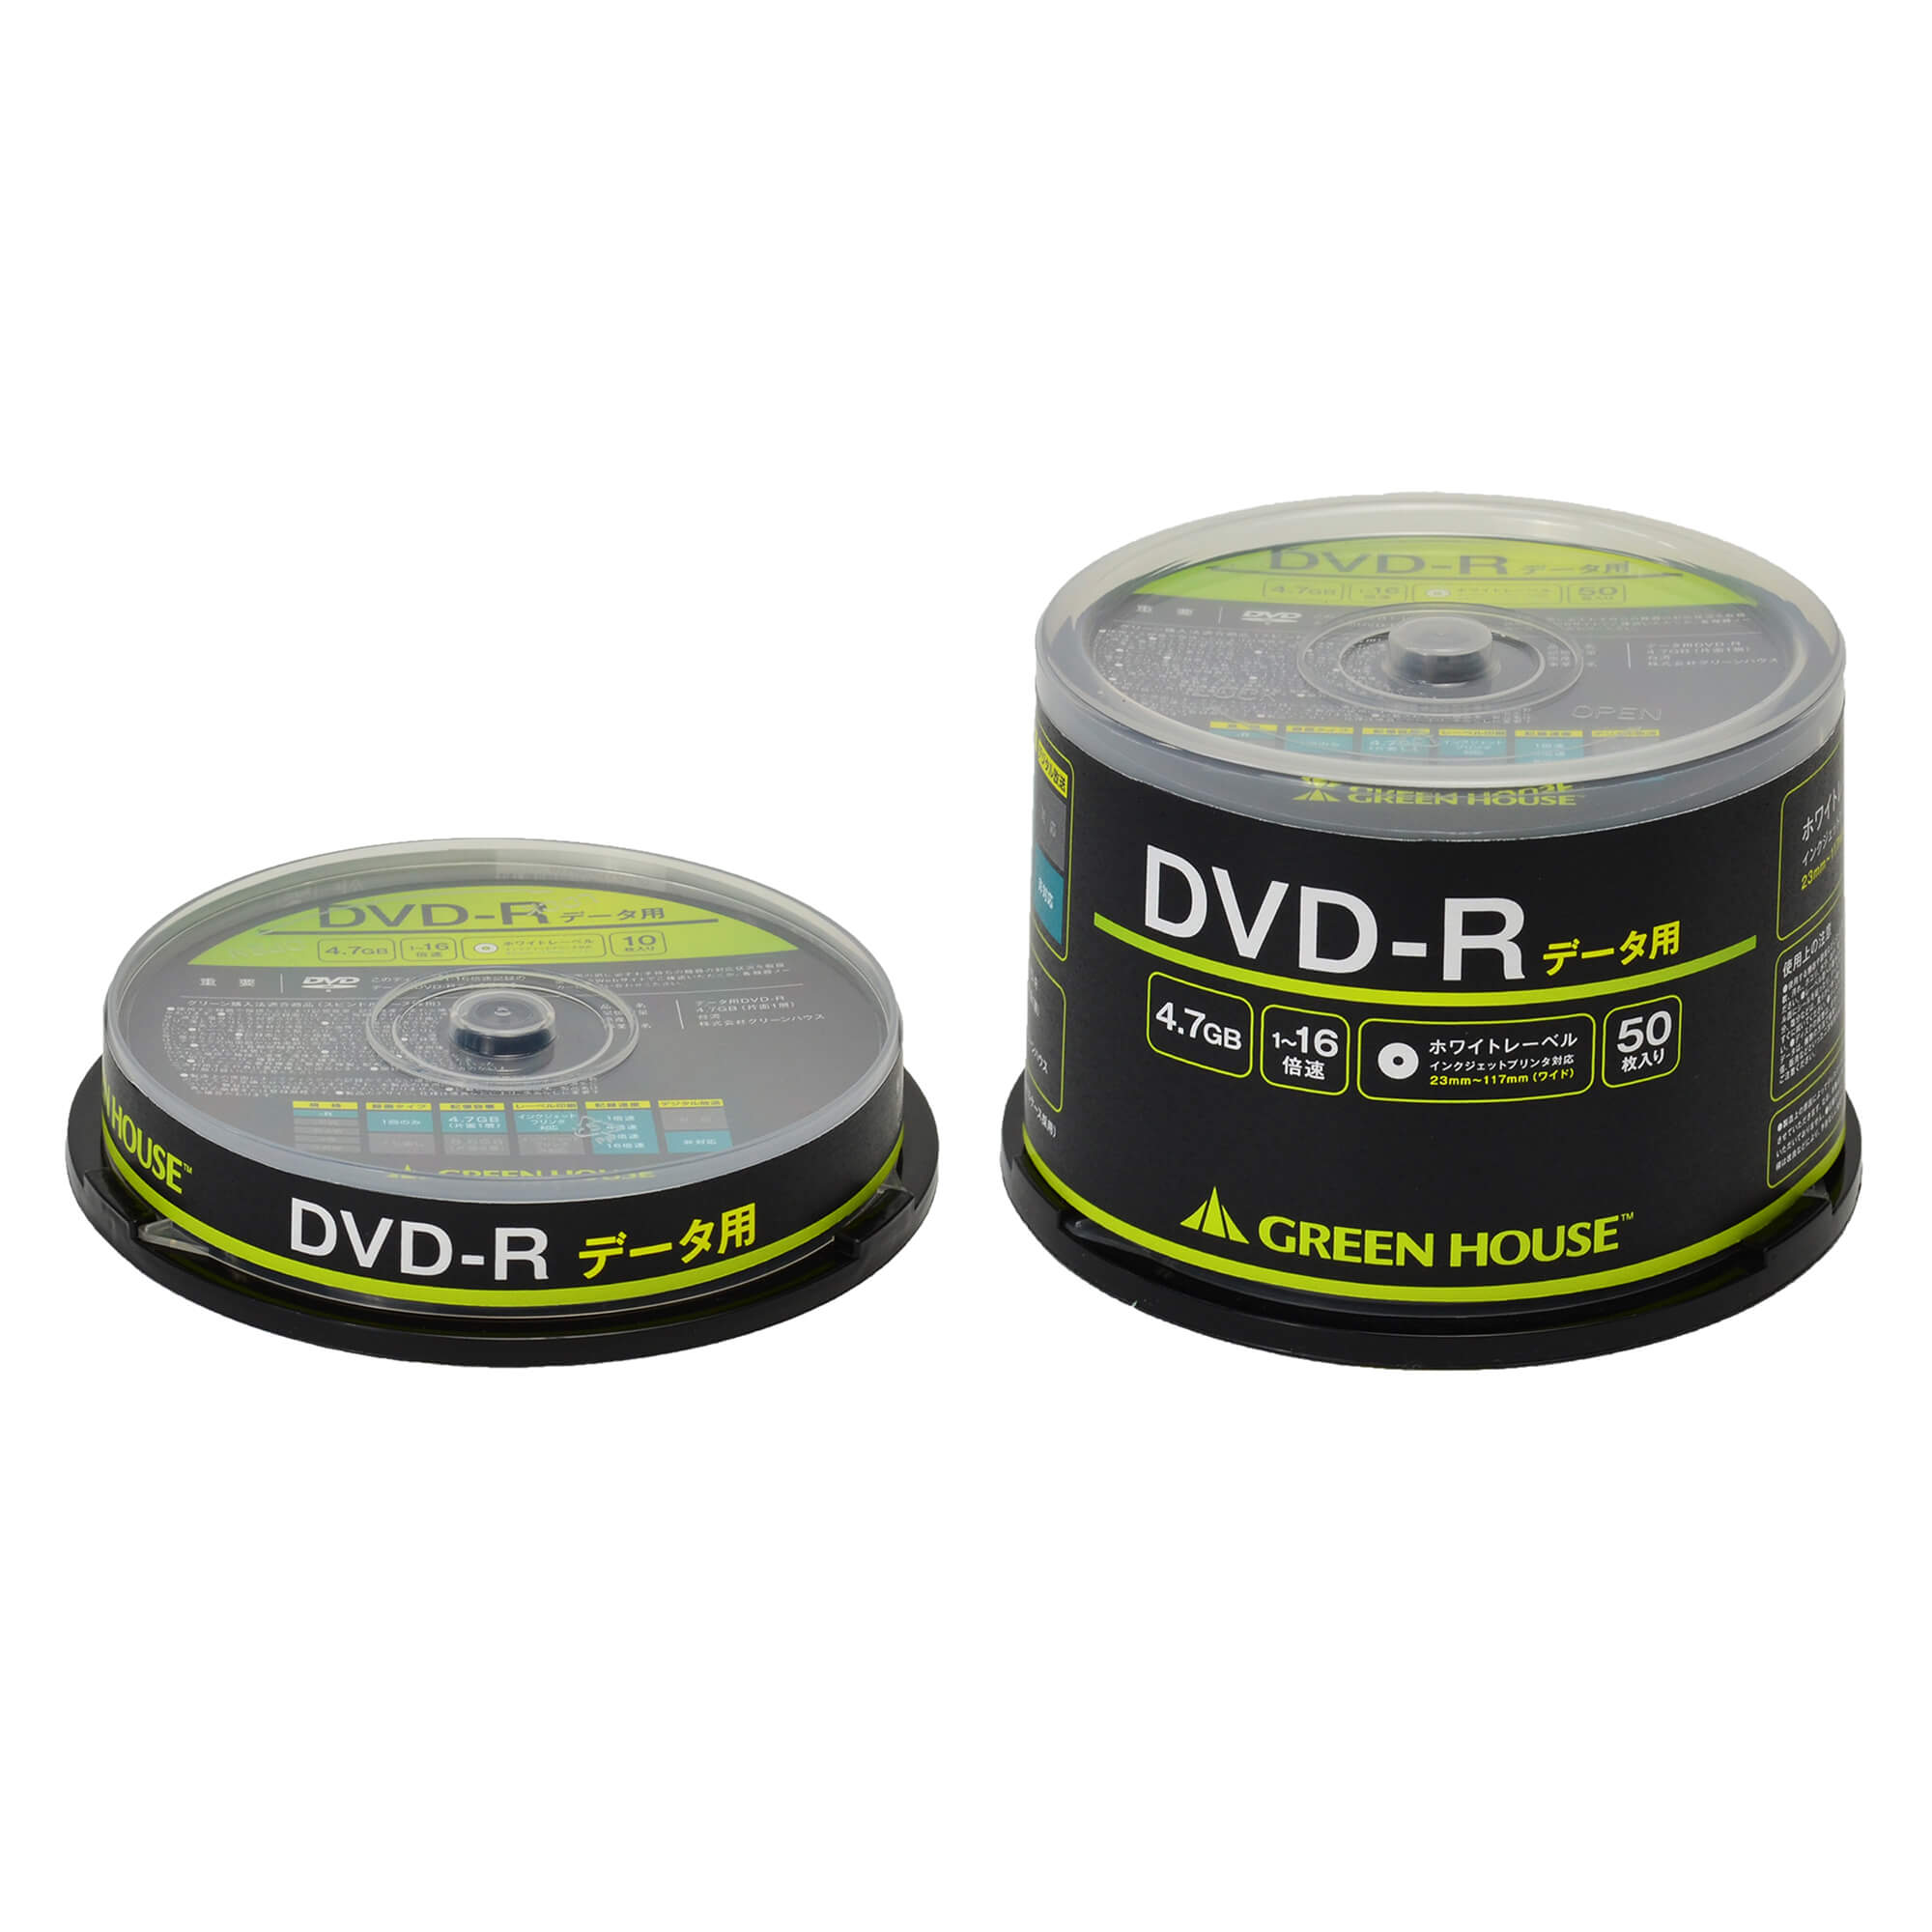 DVD-R, DVD-R | GH-DVDRDAシリーズ | GREEN HOUSE グリーンハウス